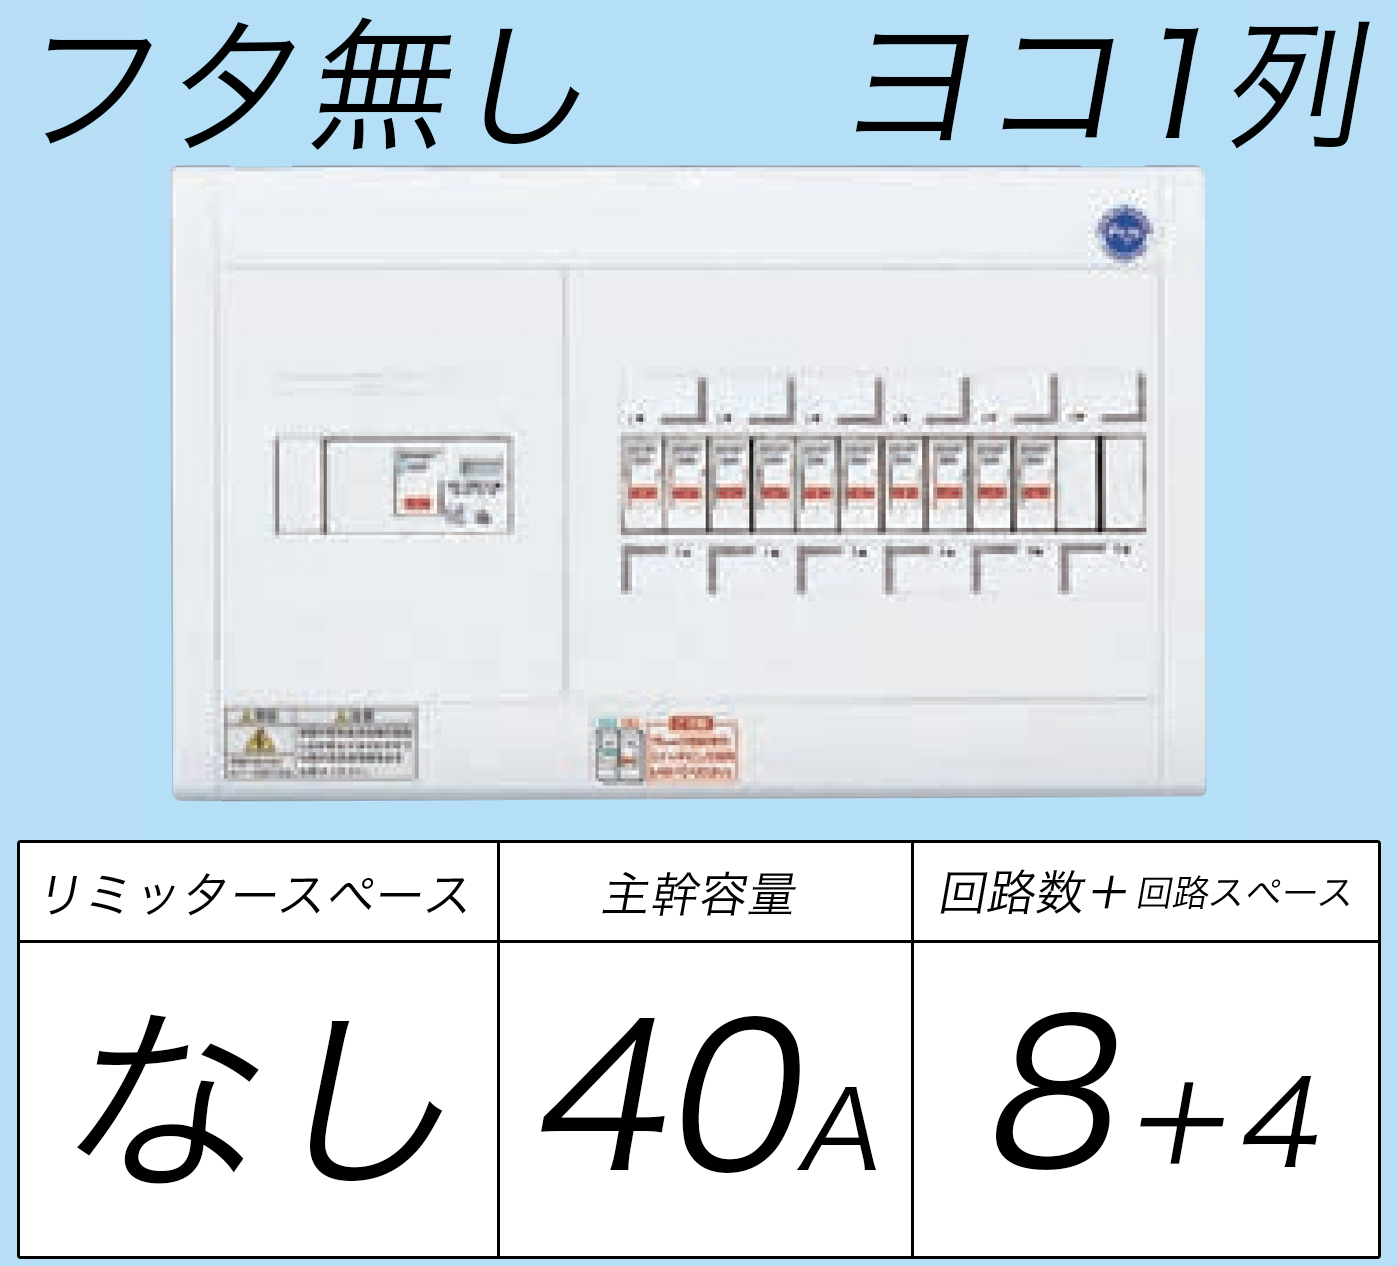 日本に Panasonic パナソニック BQR8484 住宅分電盤 コスモパネルコンパクト21 標準タイプ リミッタースペースなし 40A 